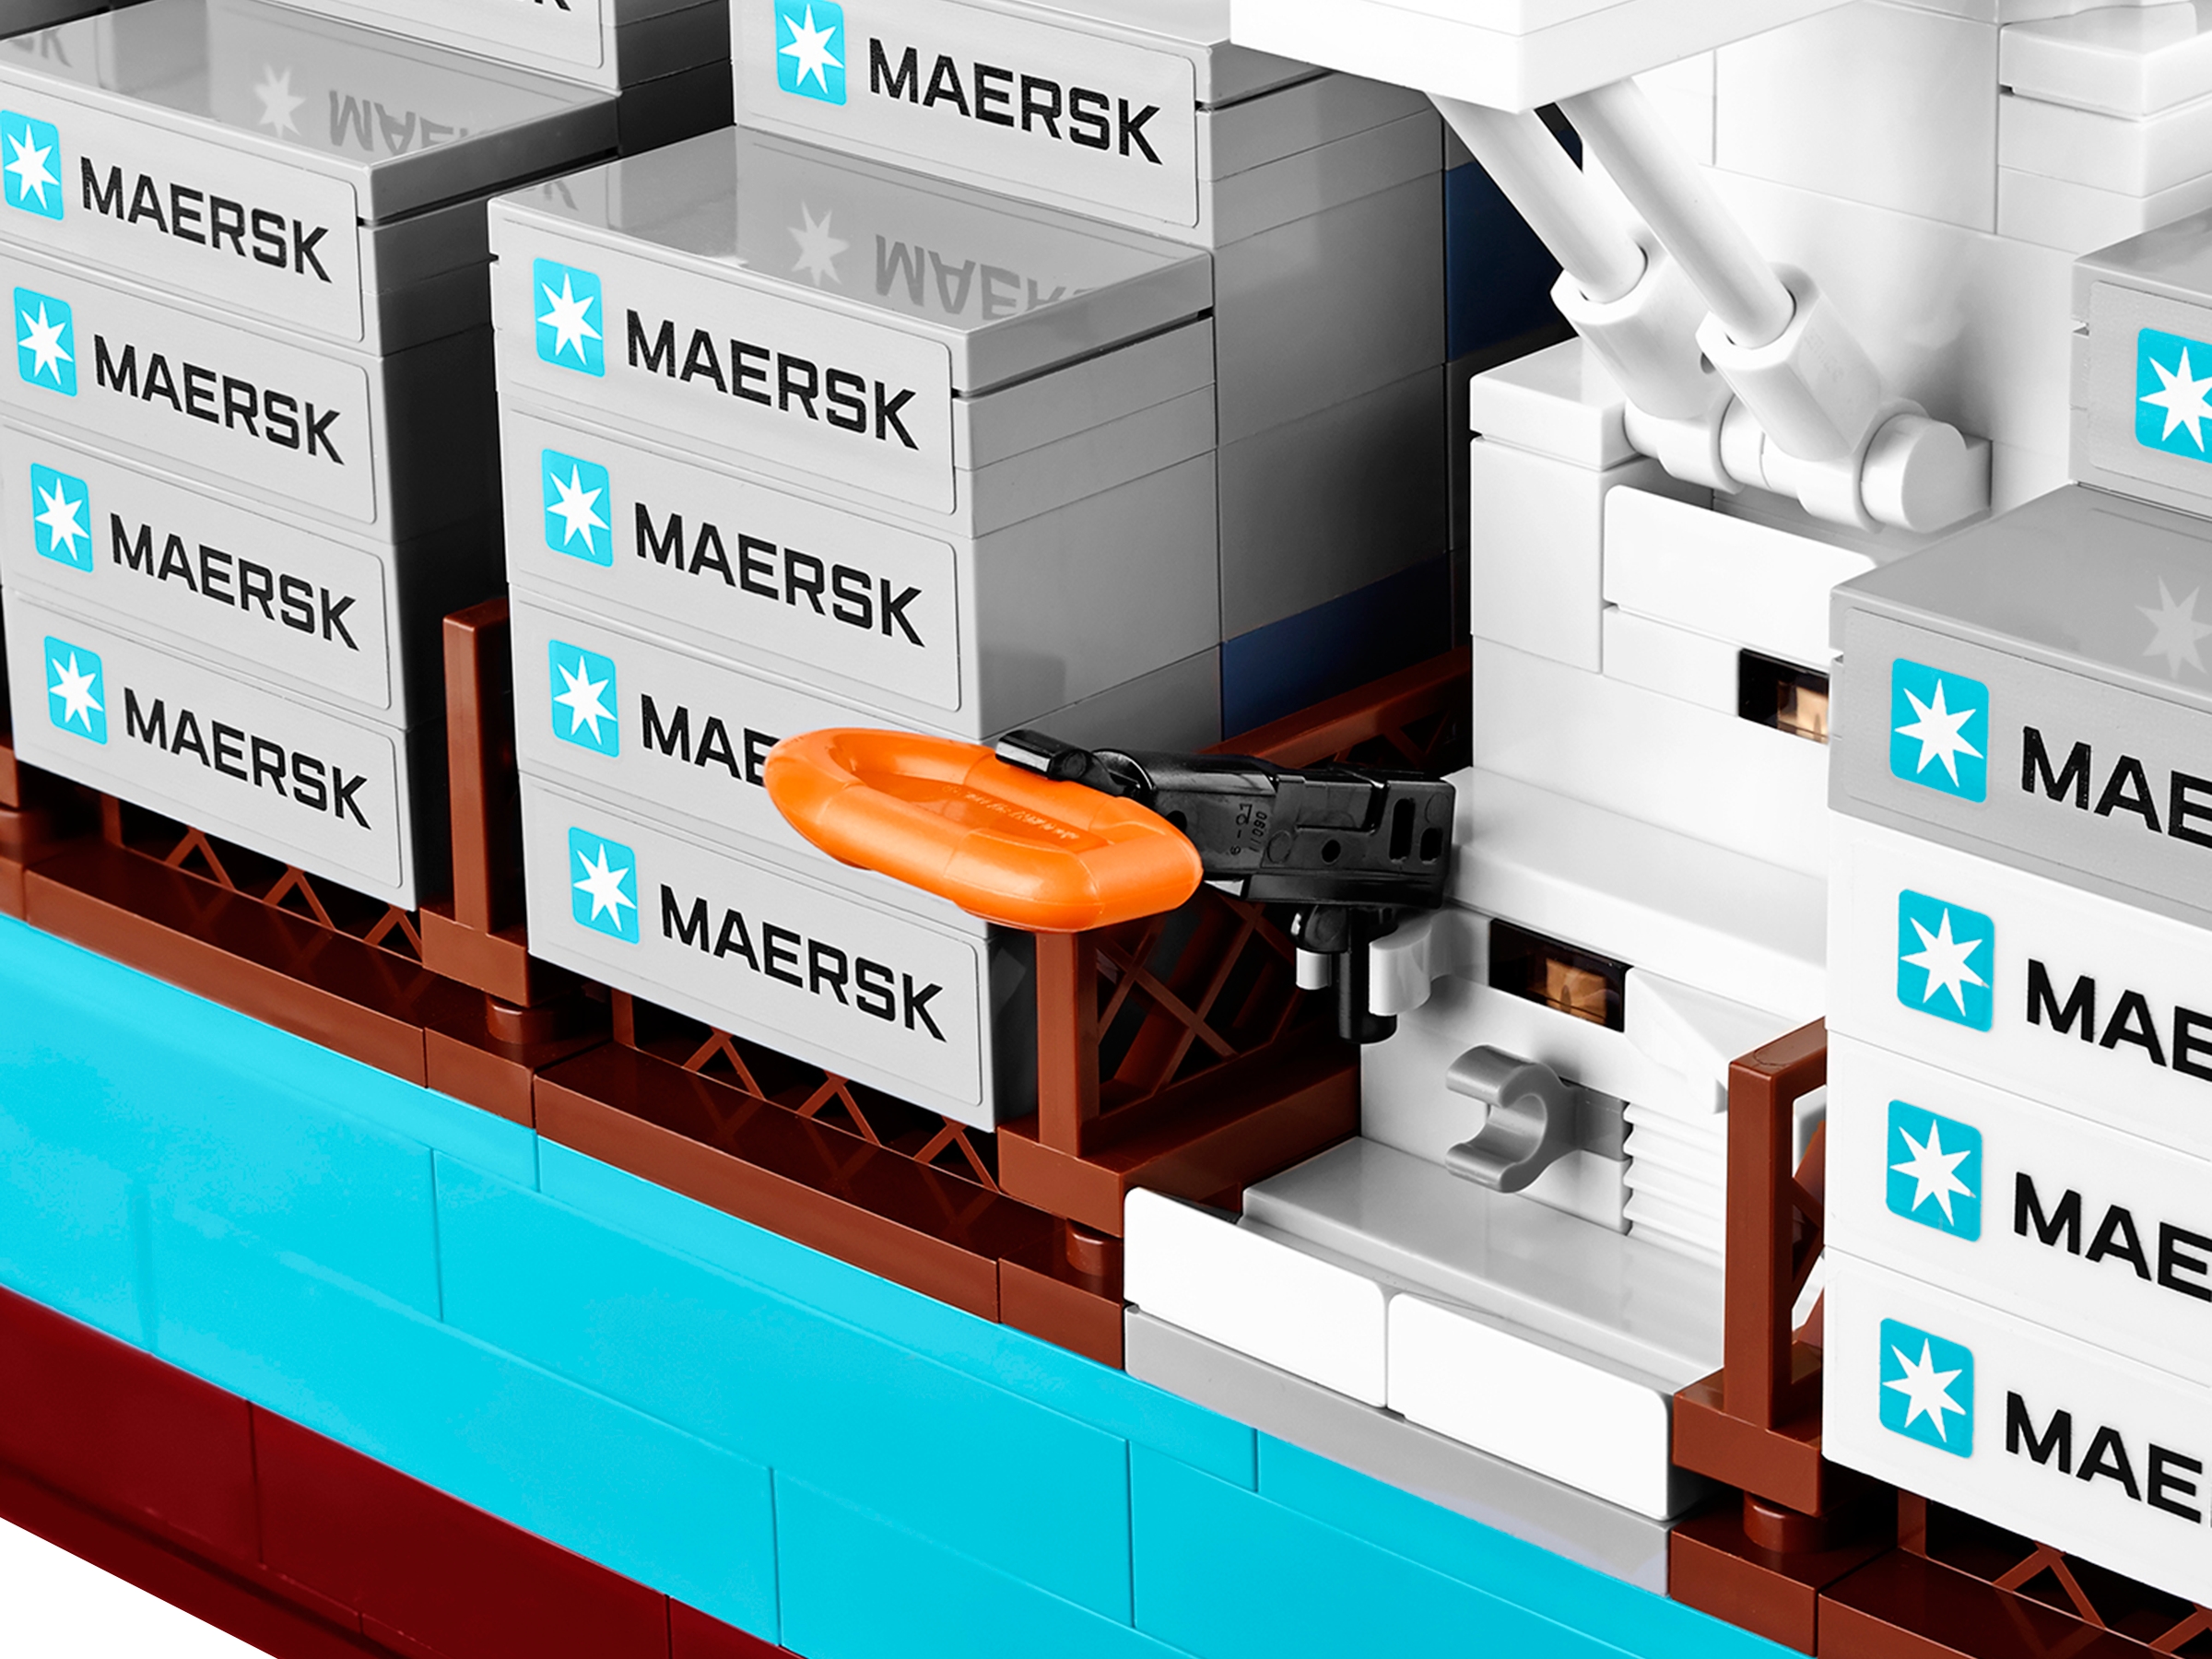 Anstændig stadig Bliver til Maersk Line Triple-E 10241 | Creator 3-in-1 | Buy online at the Official  LEGO® Shop US